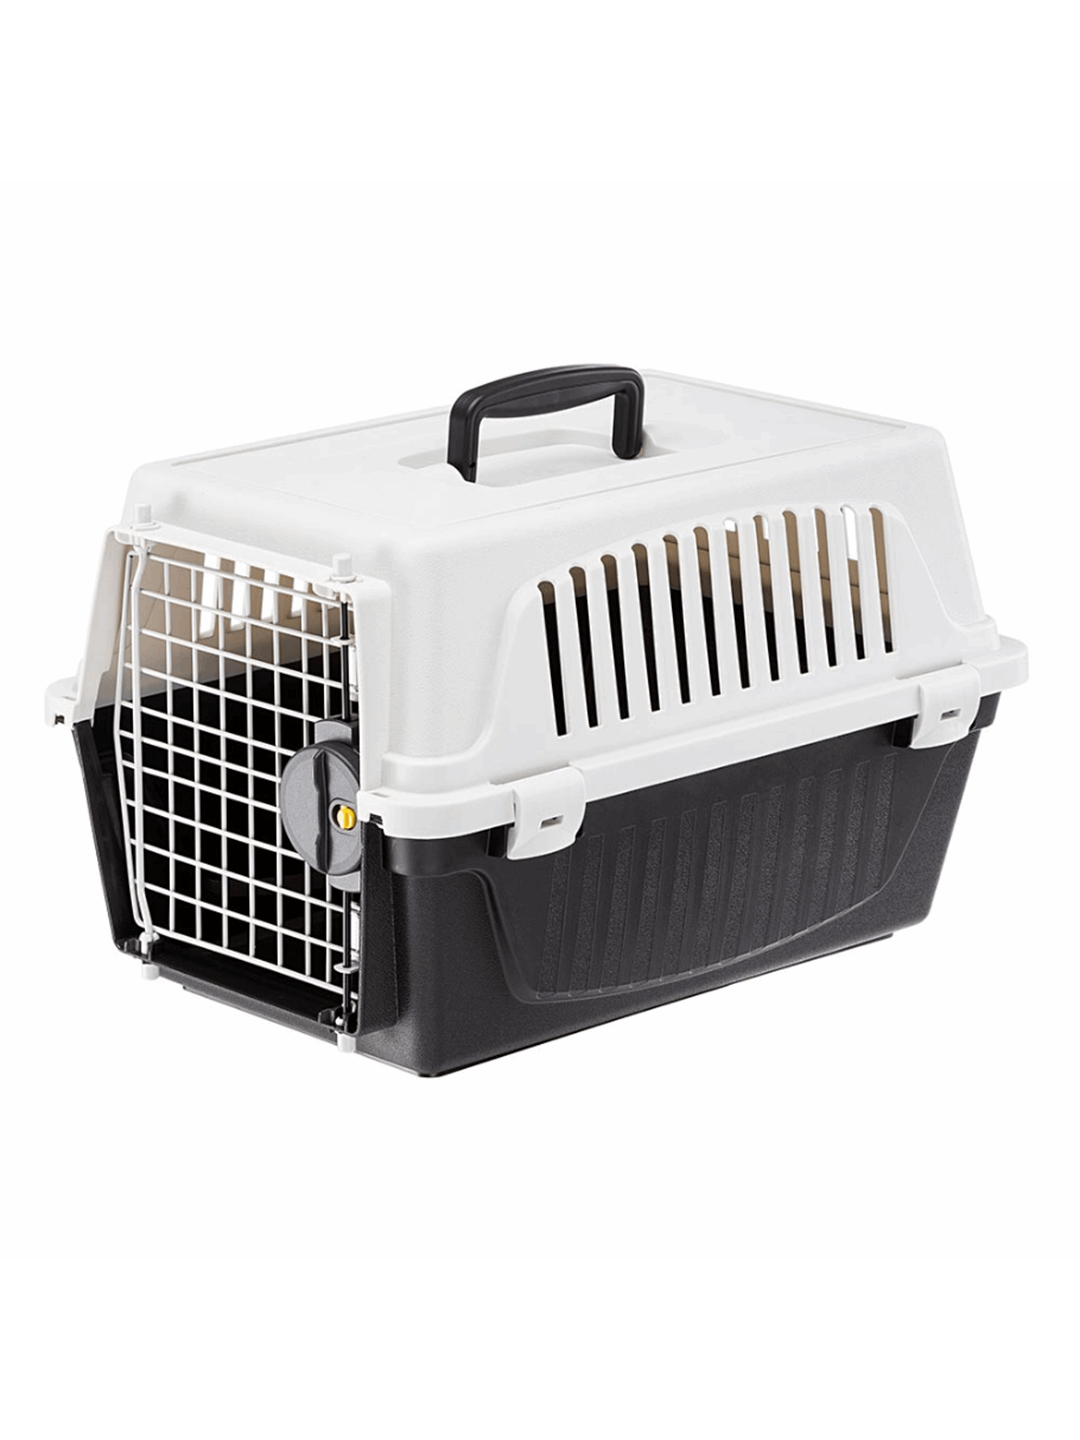 ΣΚΥΛΟΣ: Κλουβί Μεταφοράς Για Γάτες Και Μικρόσωμα Σκυλιά Ferplast Atlas  Professional - 10, Διαστάσεων: 32,5 X 48 X H 29 cm